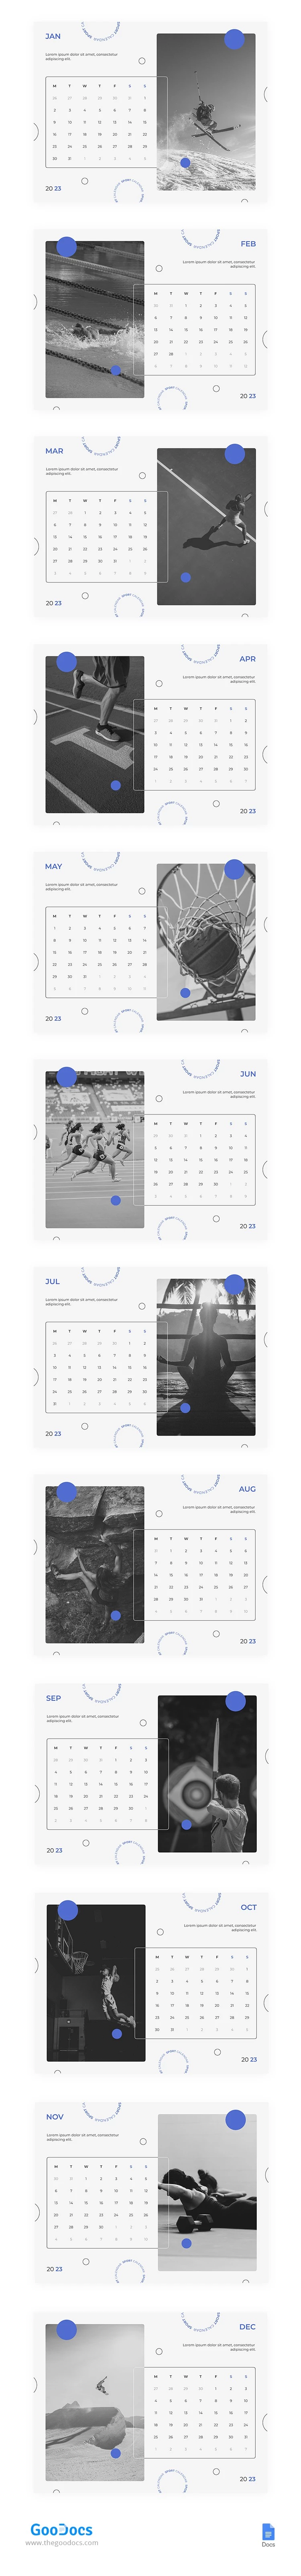 Calendario deportivo moderno en color blanco. - free Google Docs Template - 10065886